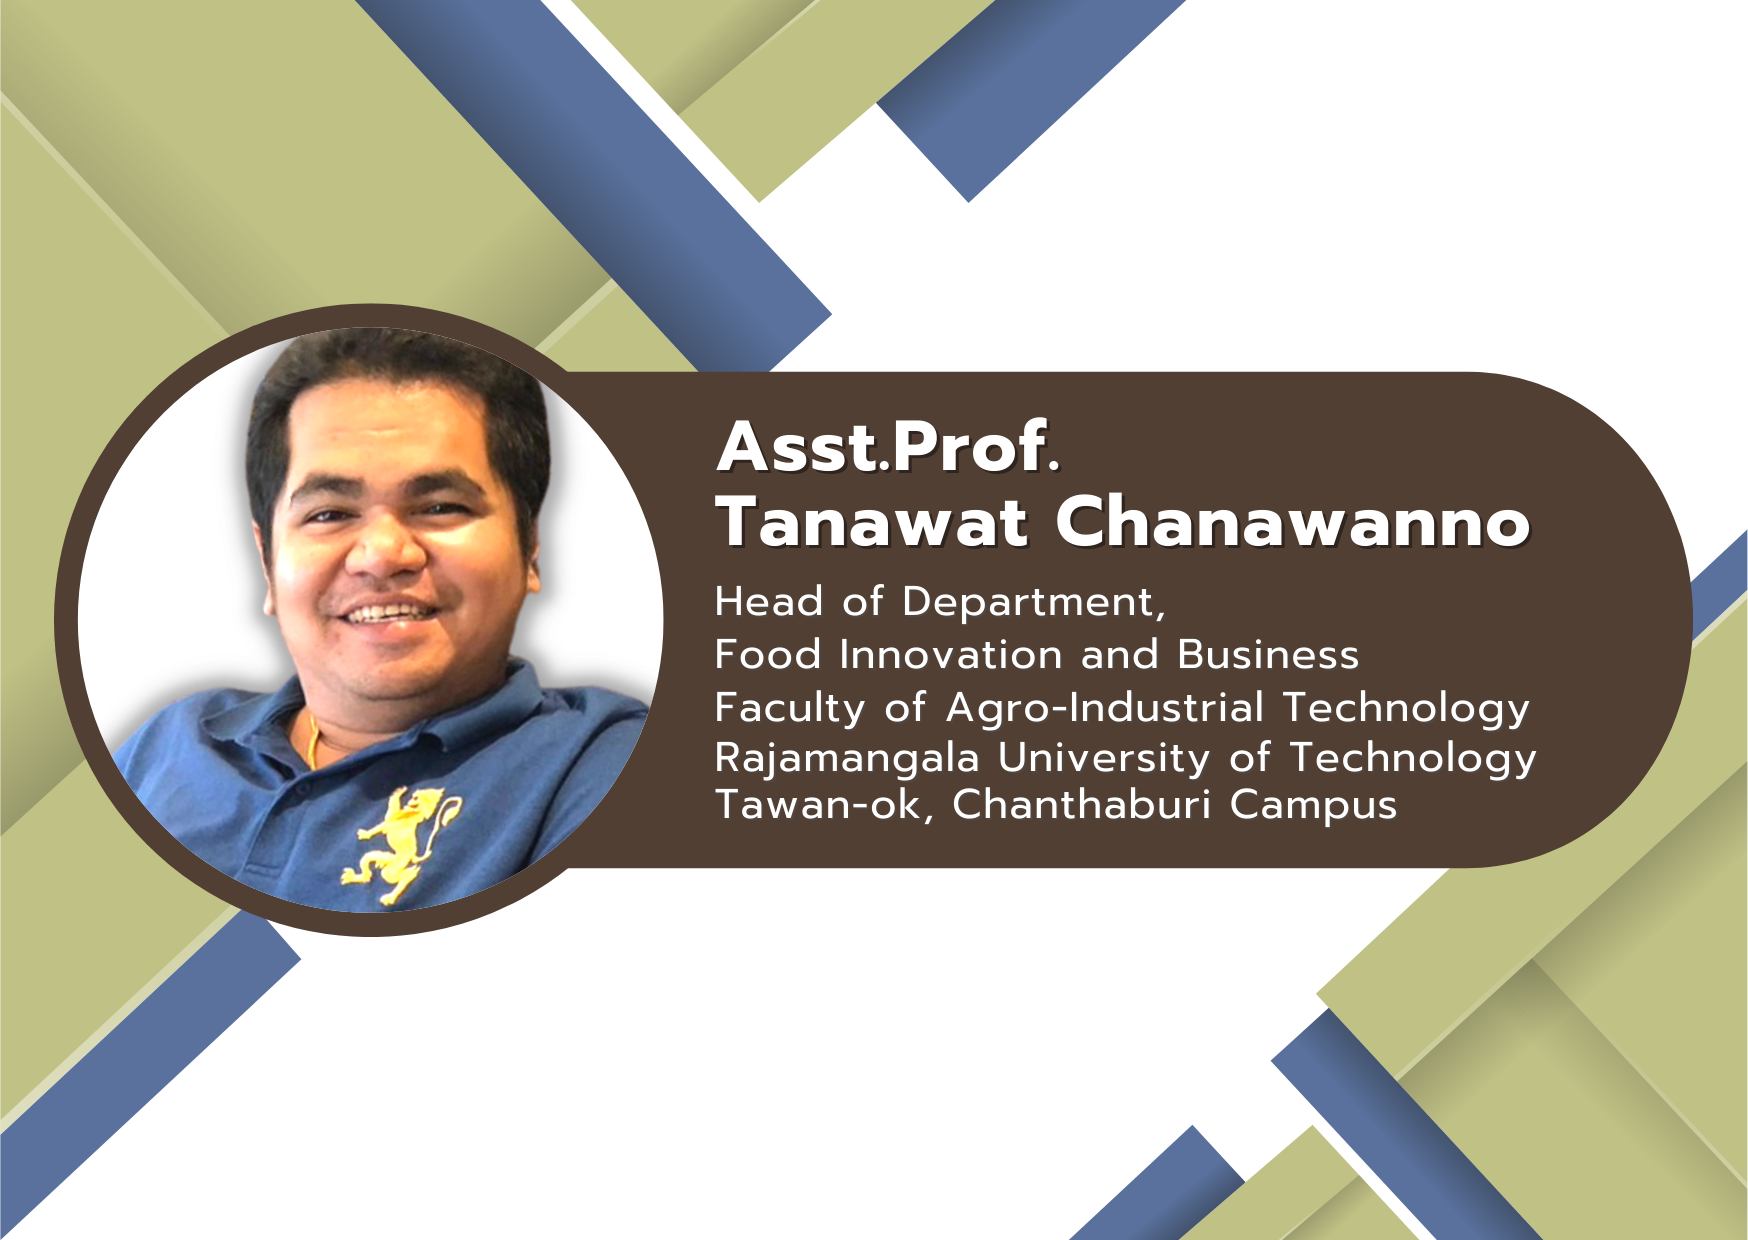 Asst. Prof. Tanawat Chanawanno